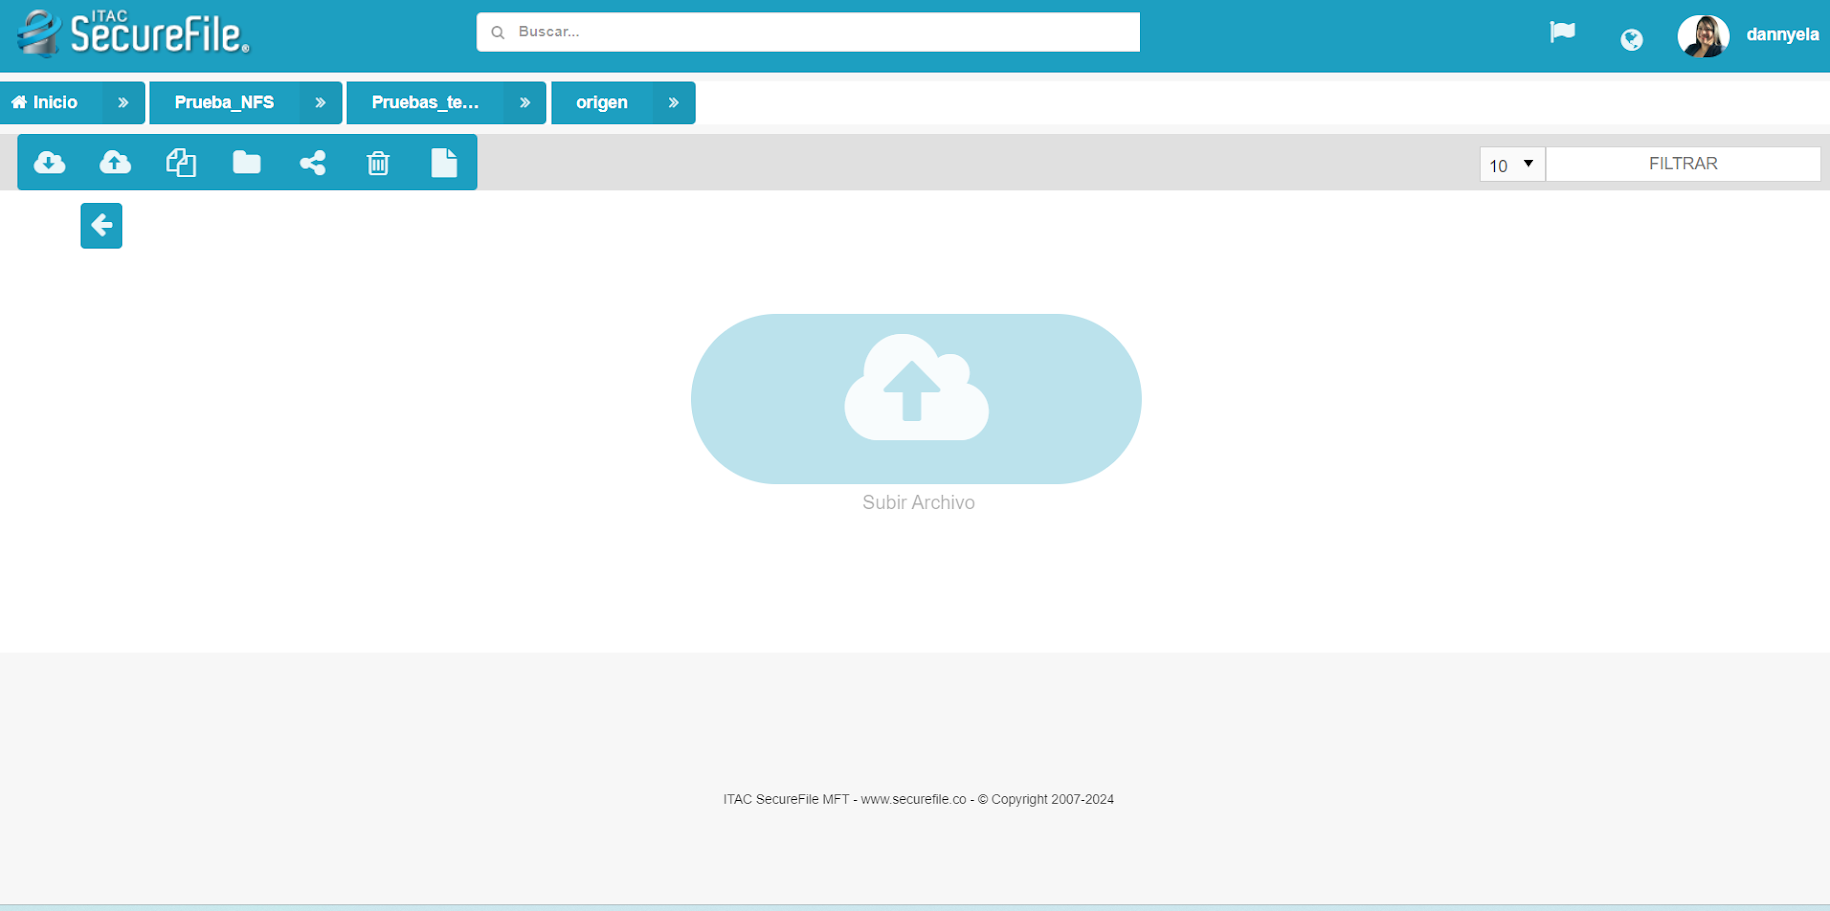 Nuestra solución cuenta con un portal para el usuario con el fin de que pueda intercambiar sus archivos de manera segura